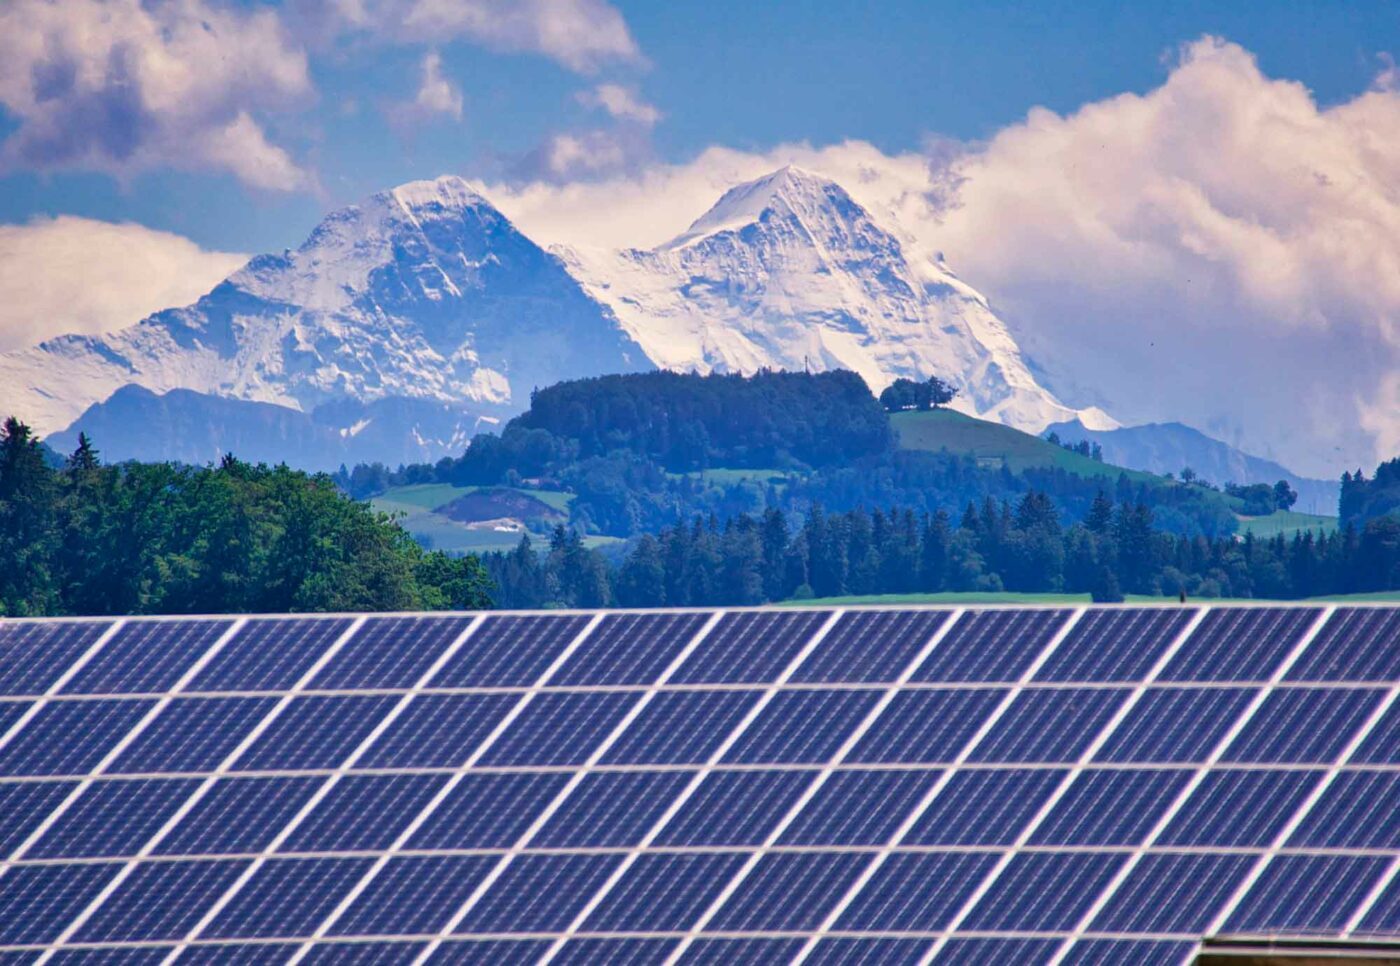 Für eine klimaneutrale Zukunft müssten in Österreich bis 2030 jede Minute drei Photovoltaikanlagen errichtet werden, sagte Barbara Alexander-Bittner von klimaaktiv. Foto: pixabay